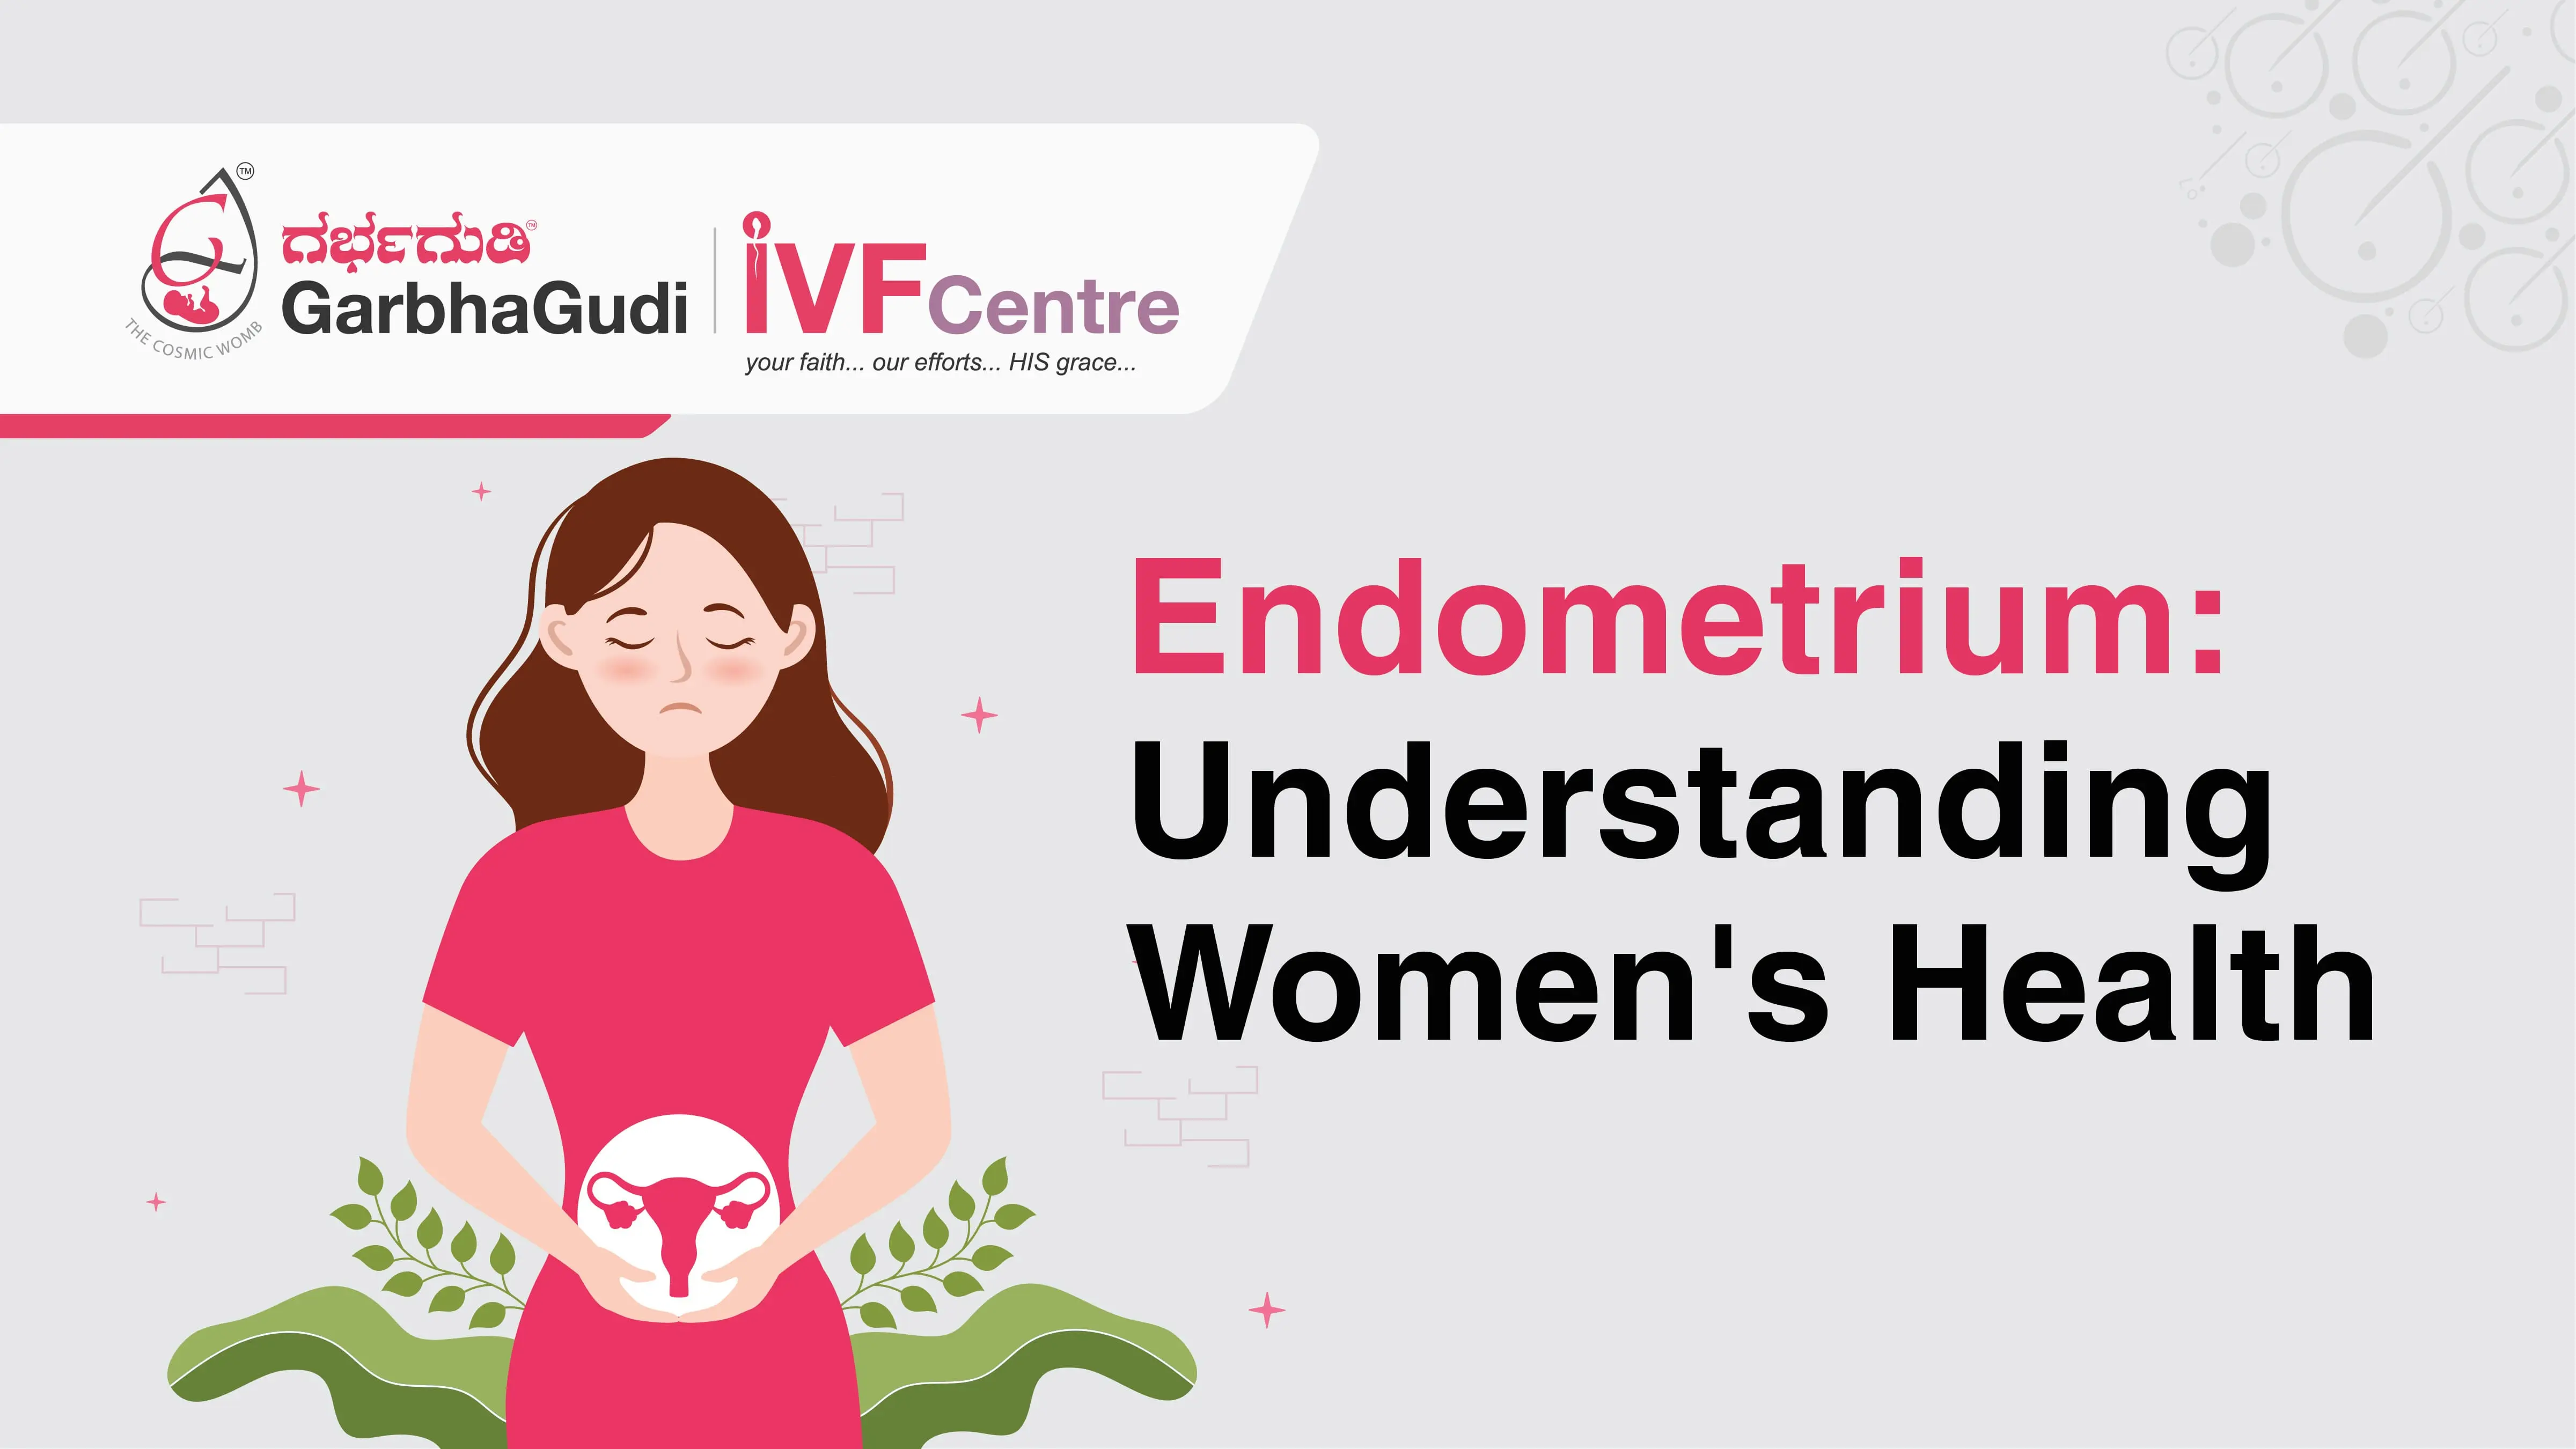 Endometrium: Understanding Women's Health